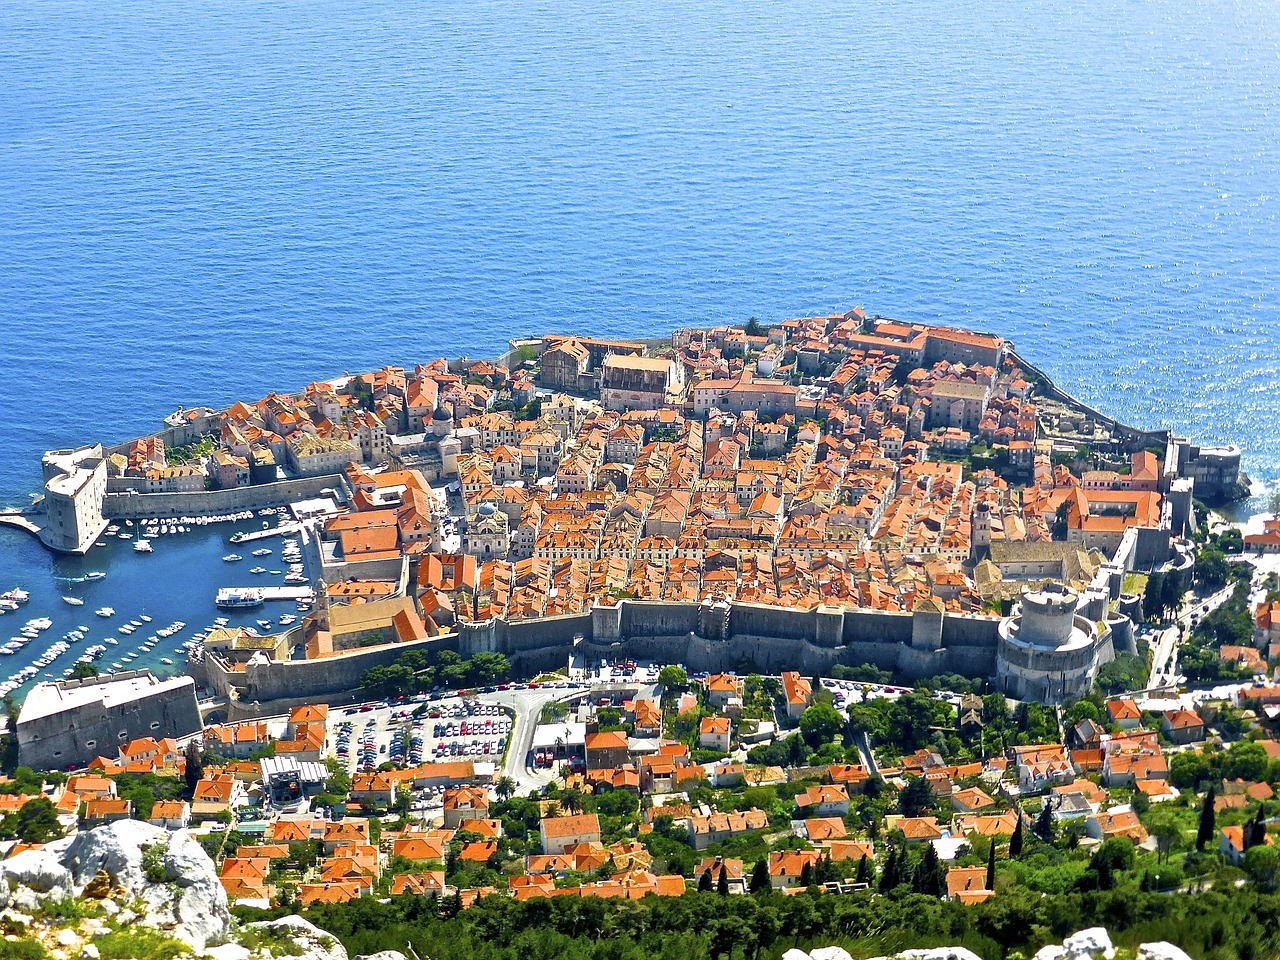 La location de voiture à Dubrovnik pour découvrir la cité